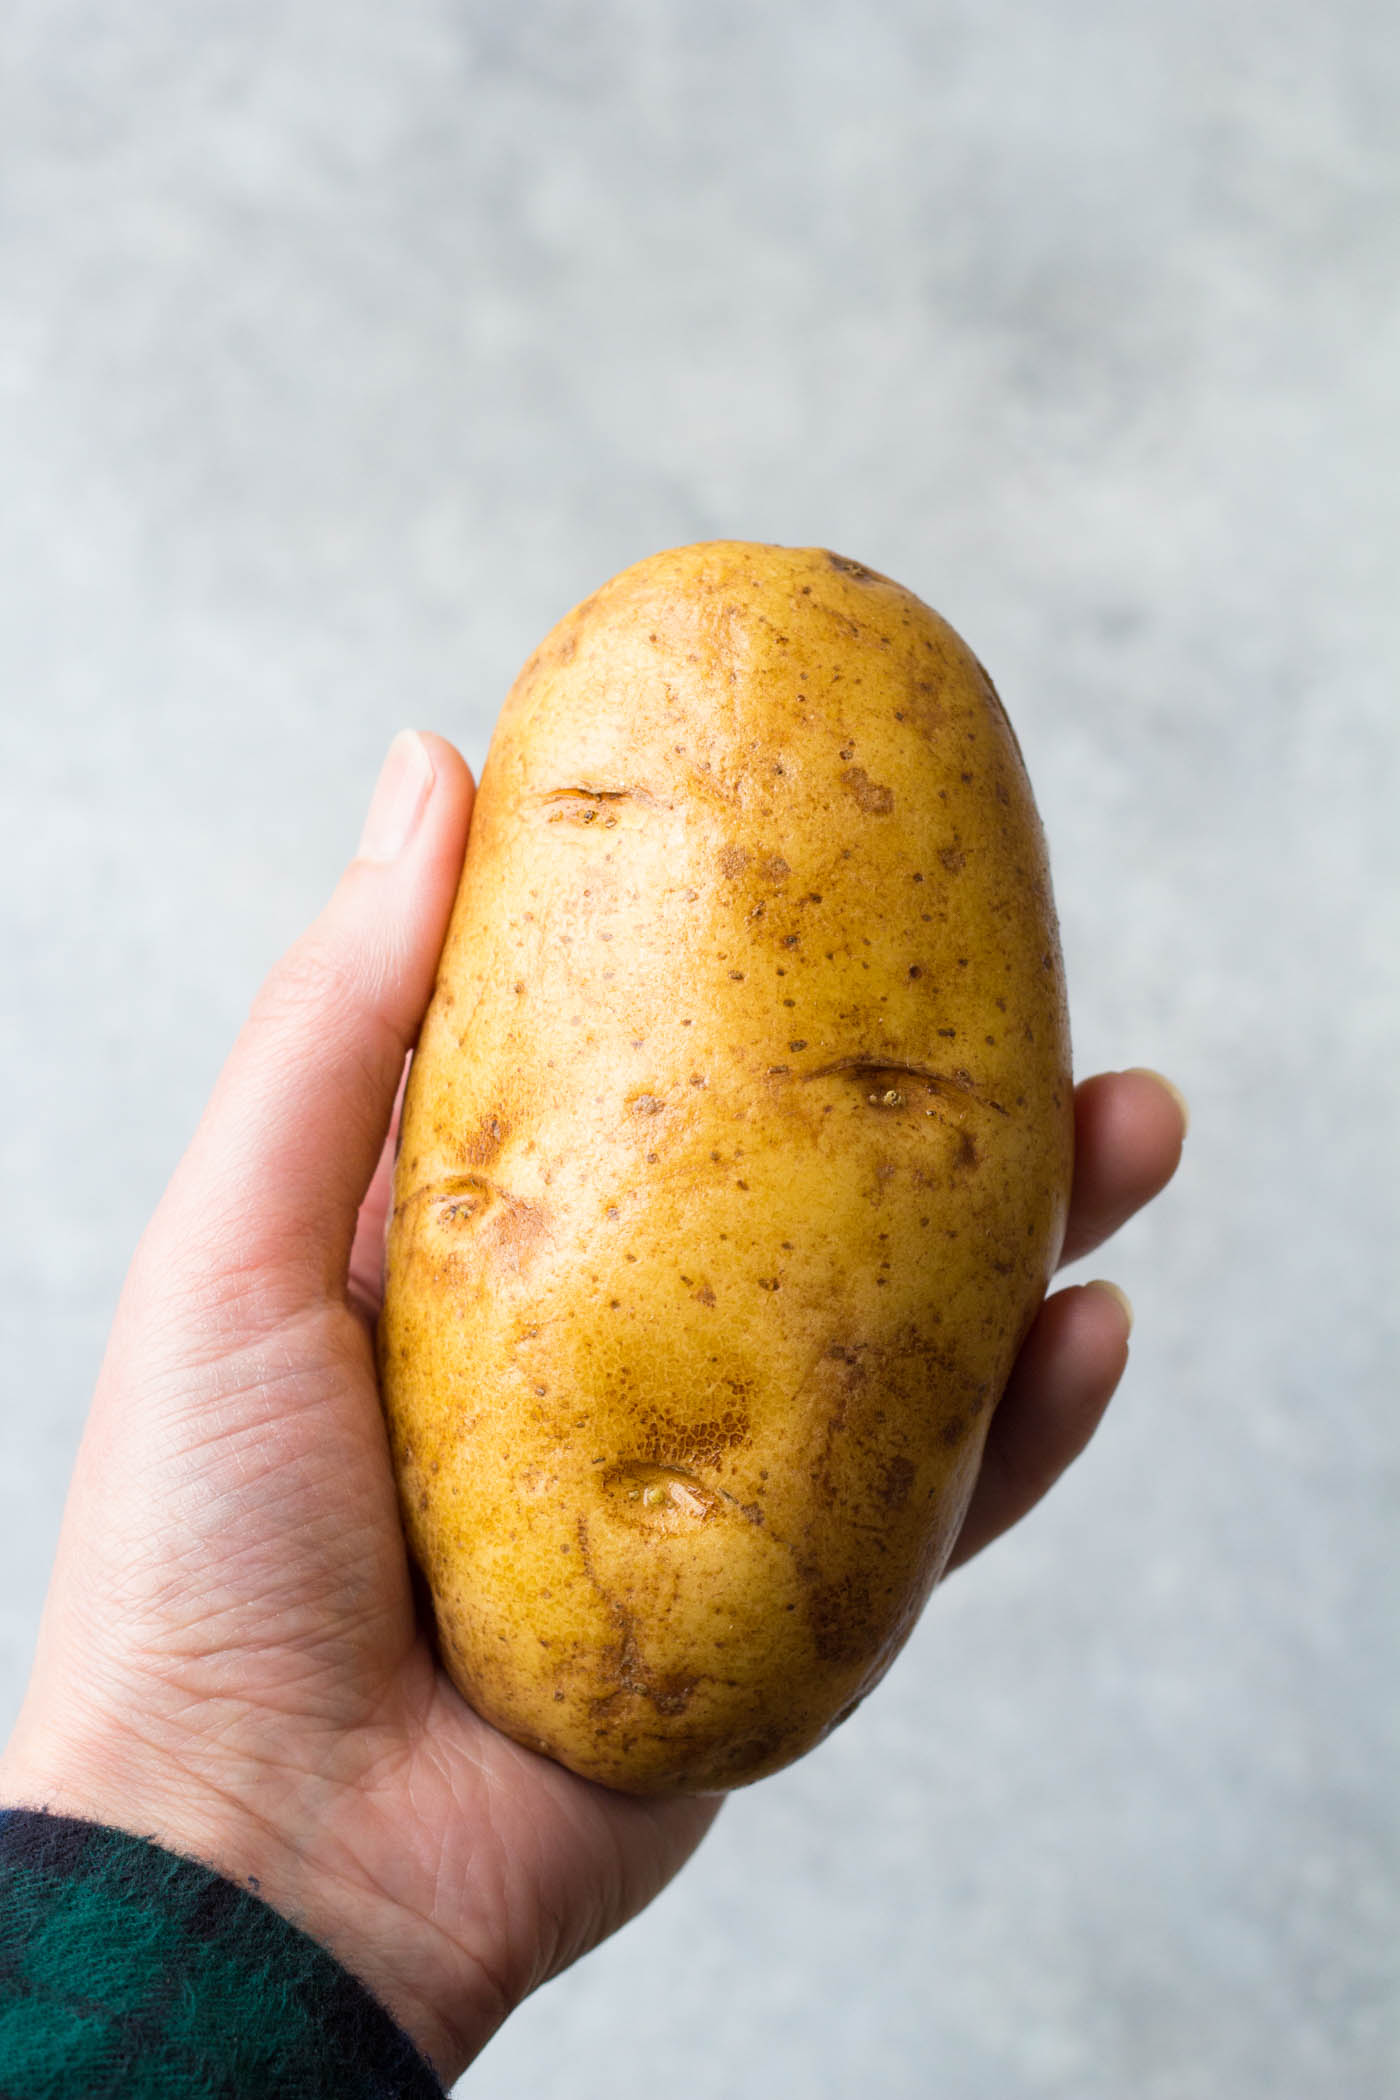 Russet potato held in woman's hand.